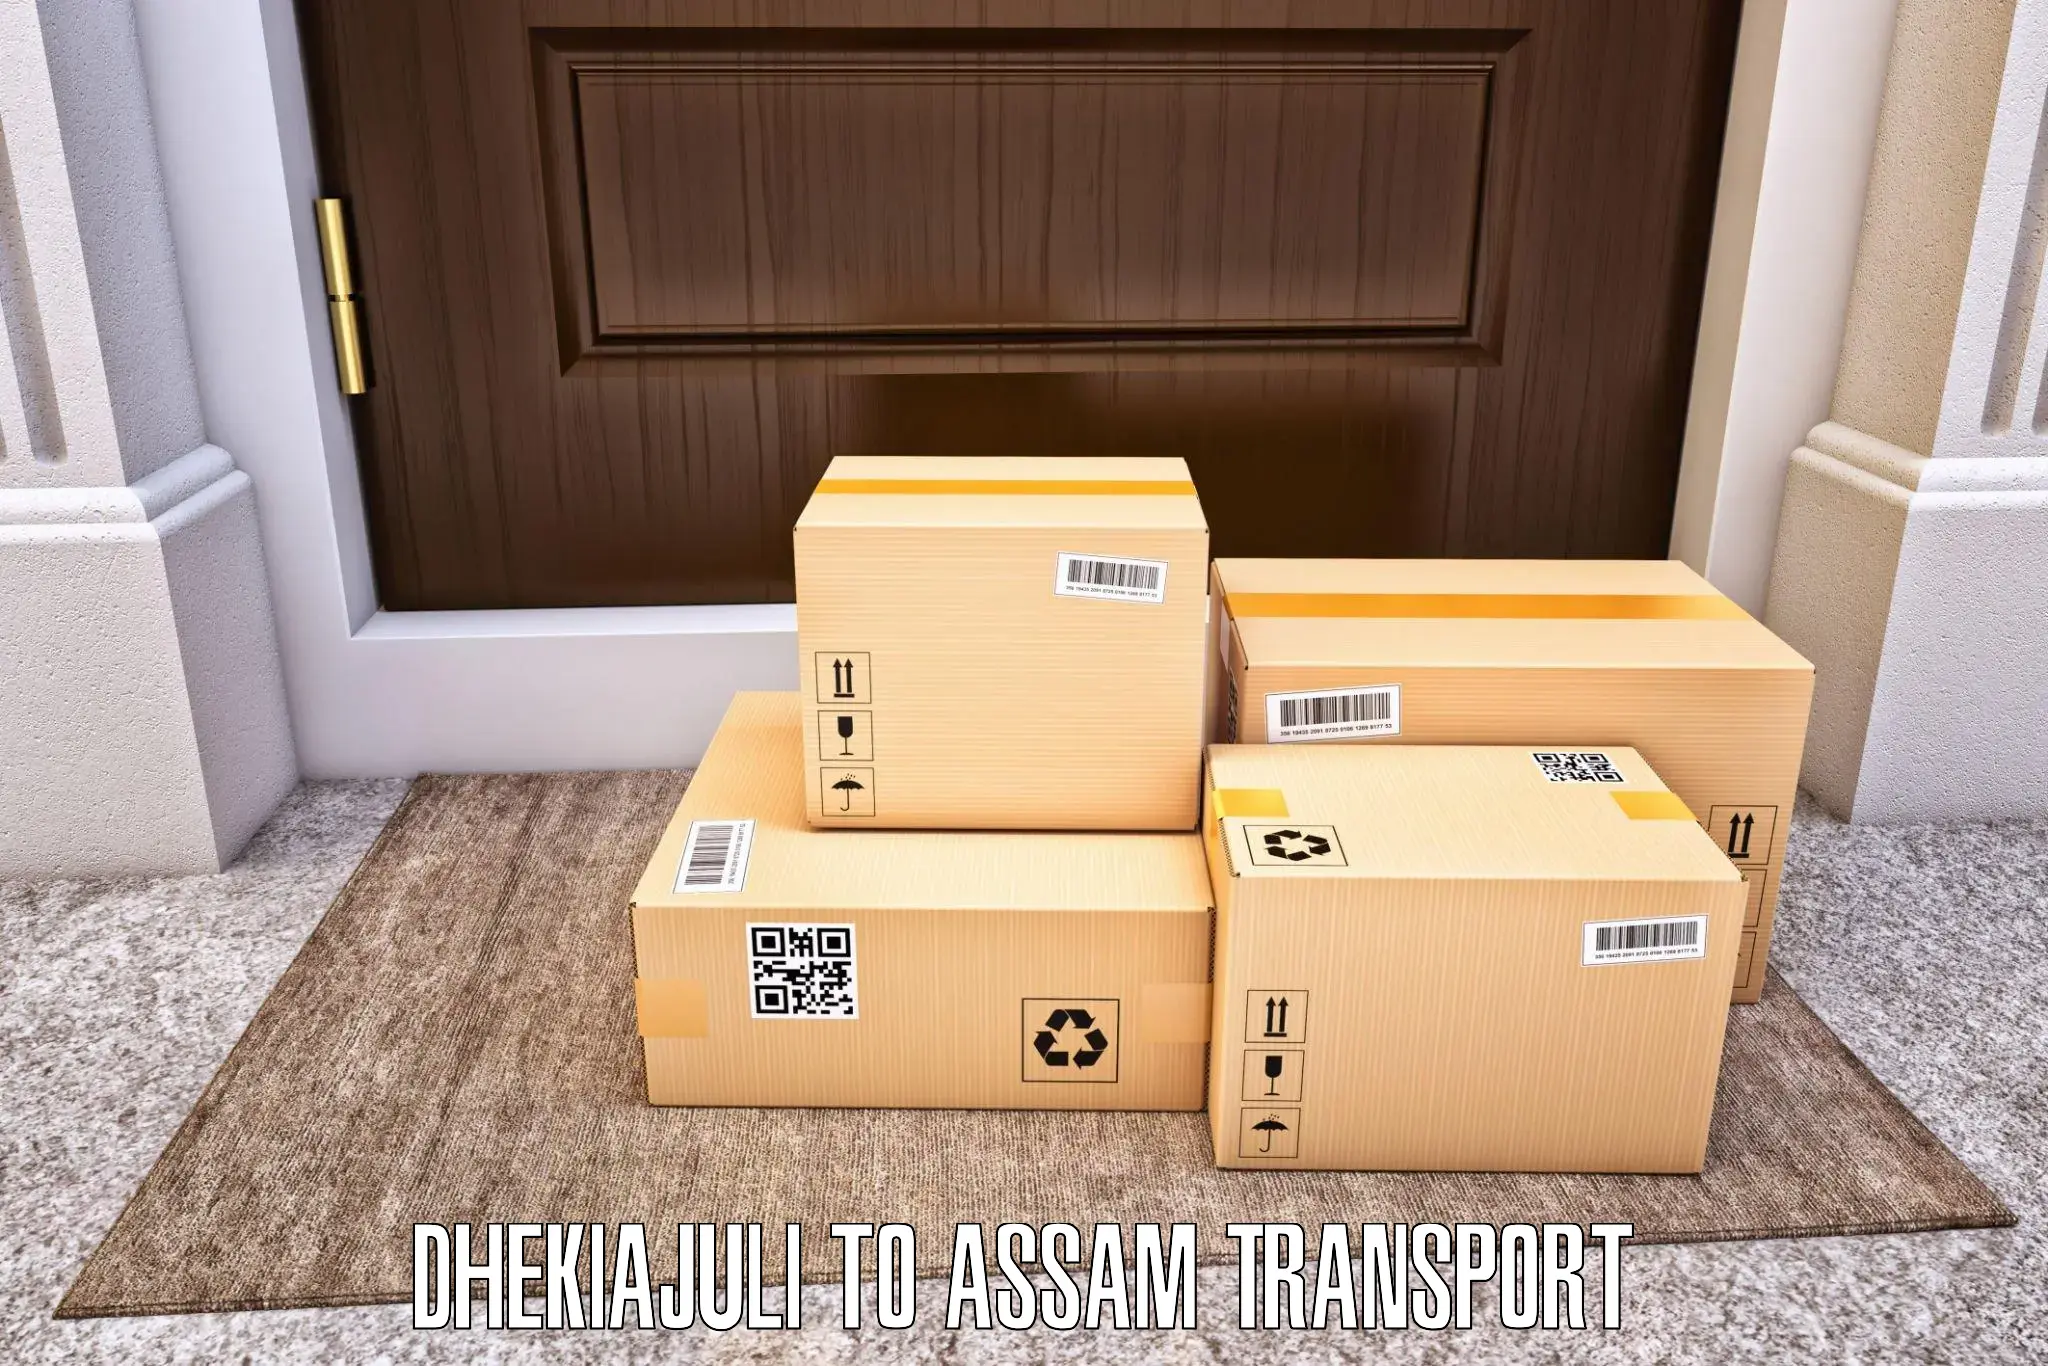 Material transport services Dhekiajuli to Rangia